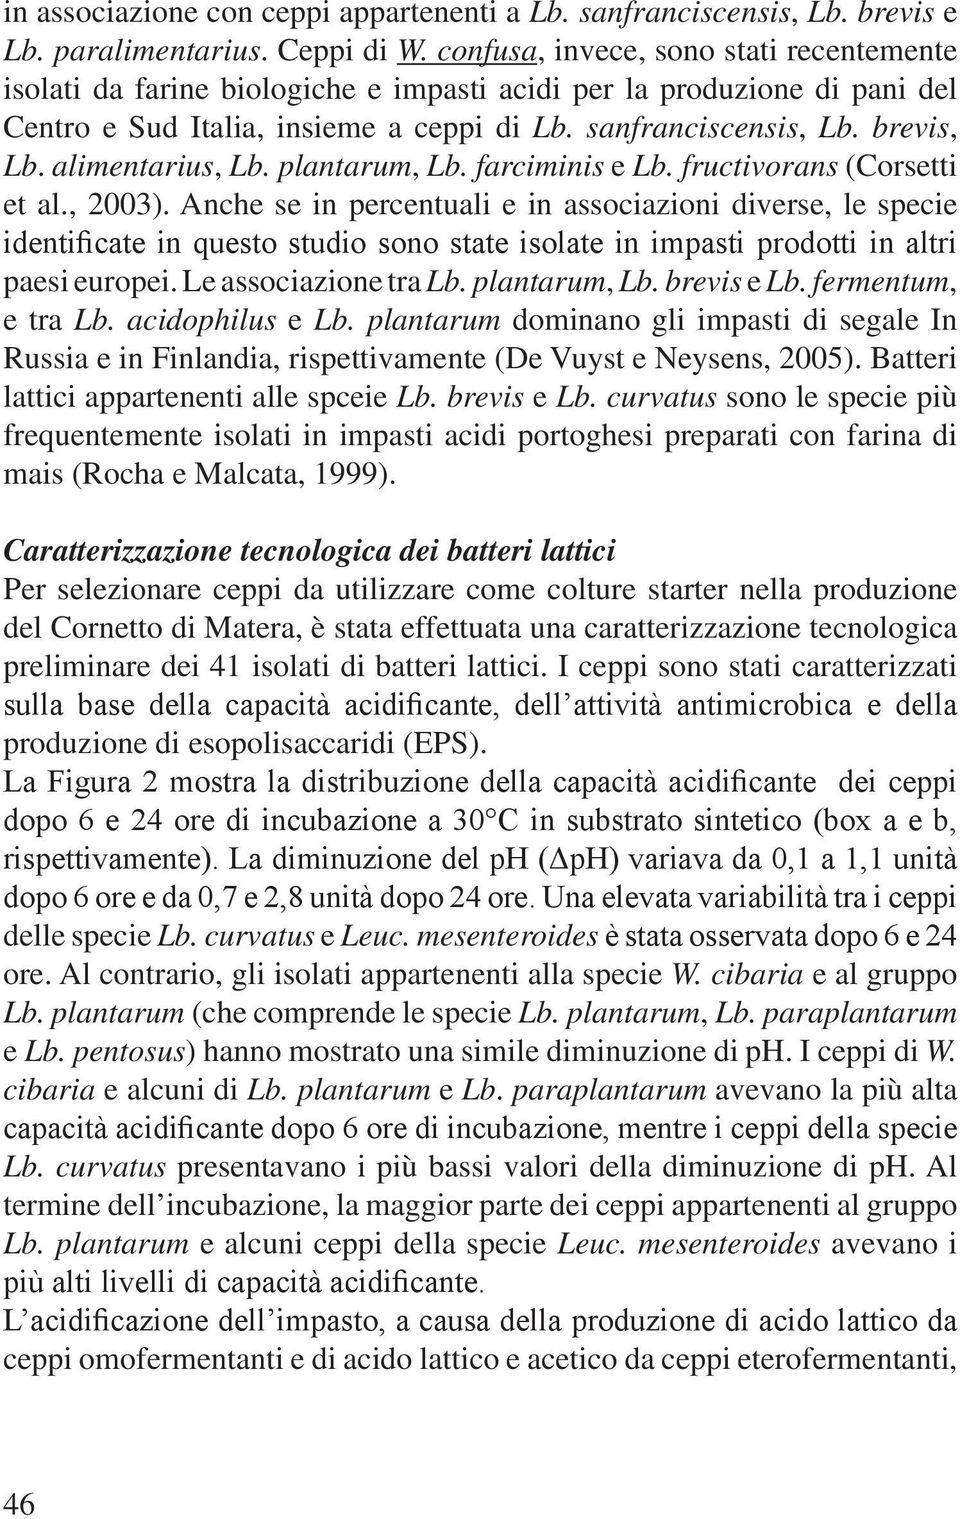 alimentarius, Lb. plantarum, Lb. farciminis e Lb. fructivorans (Corsetti et al., 2003).